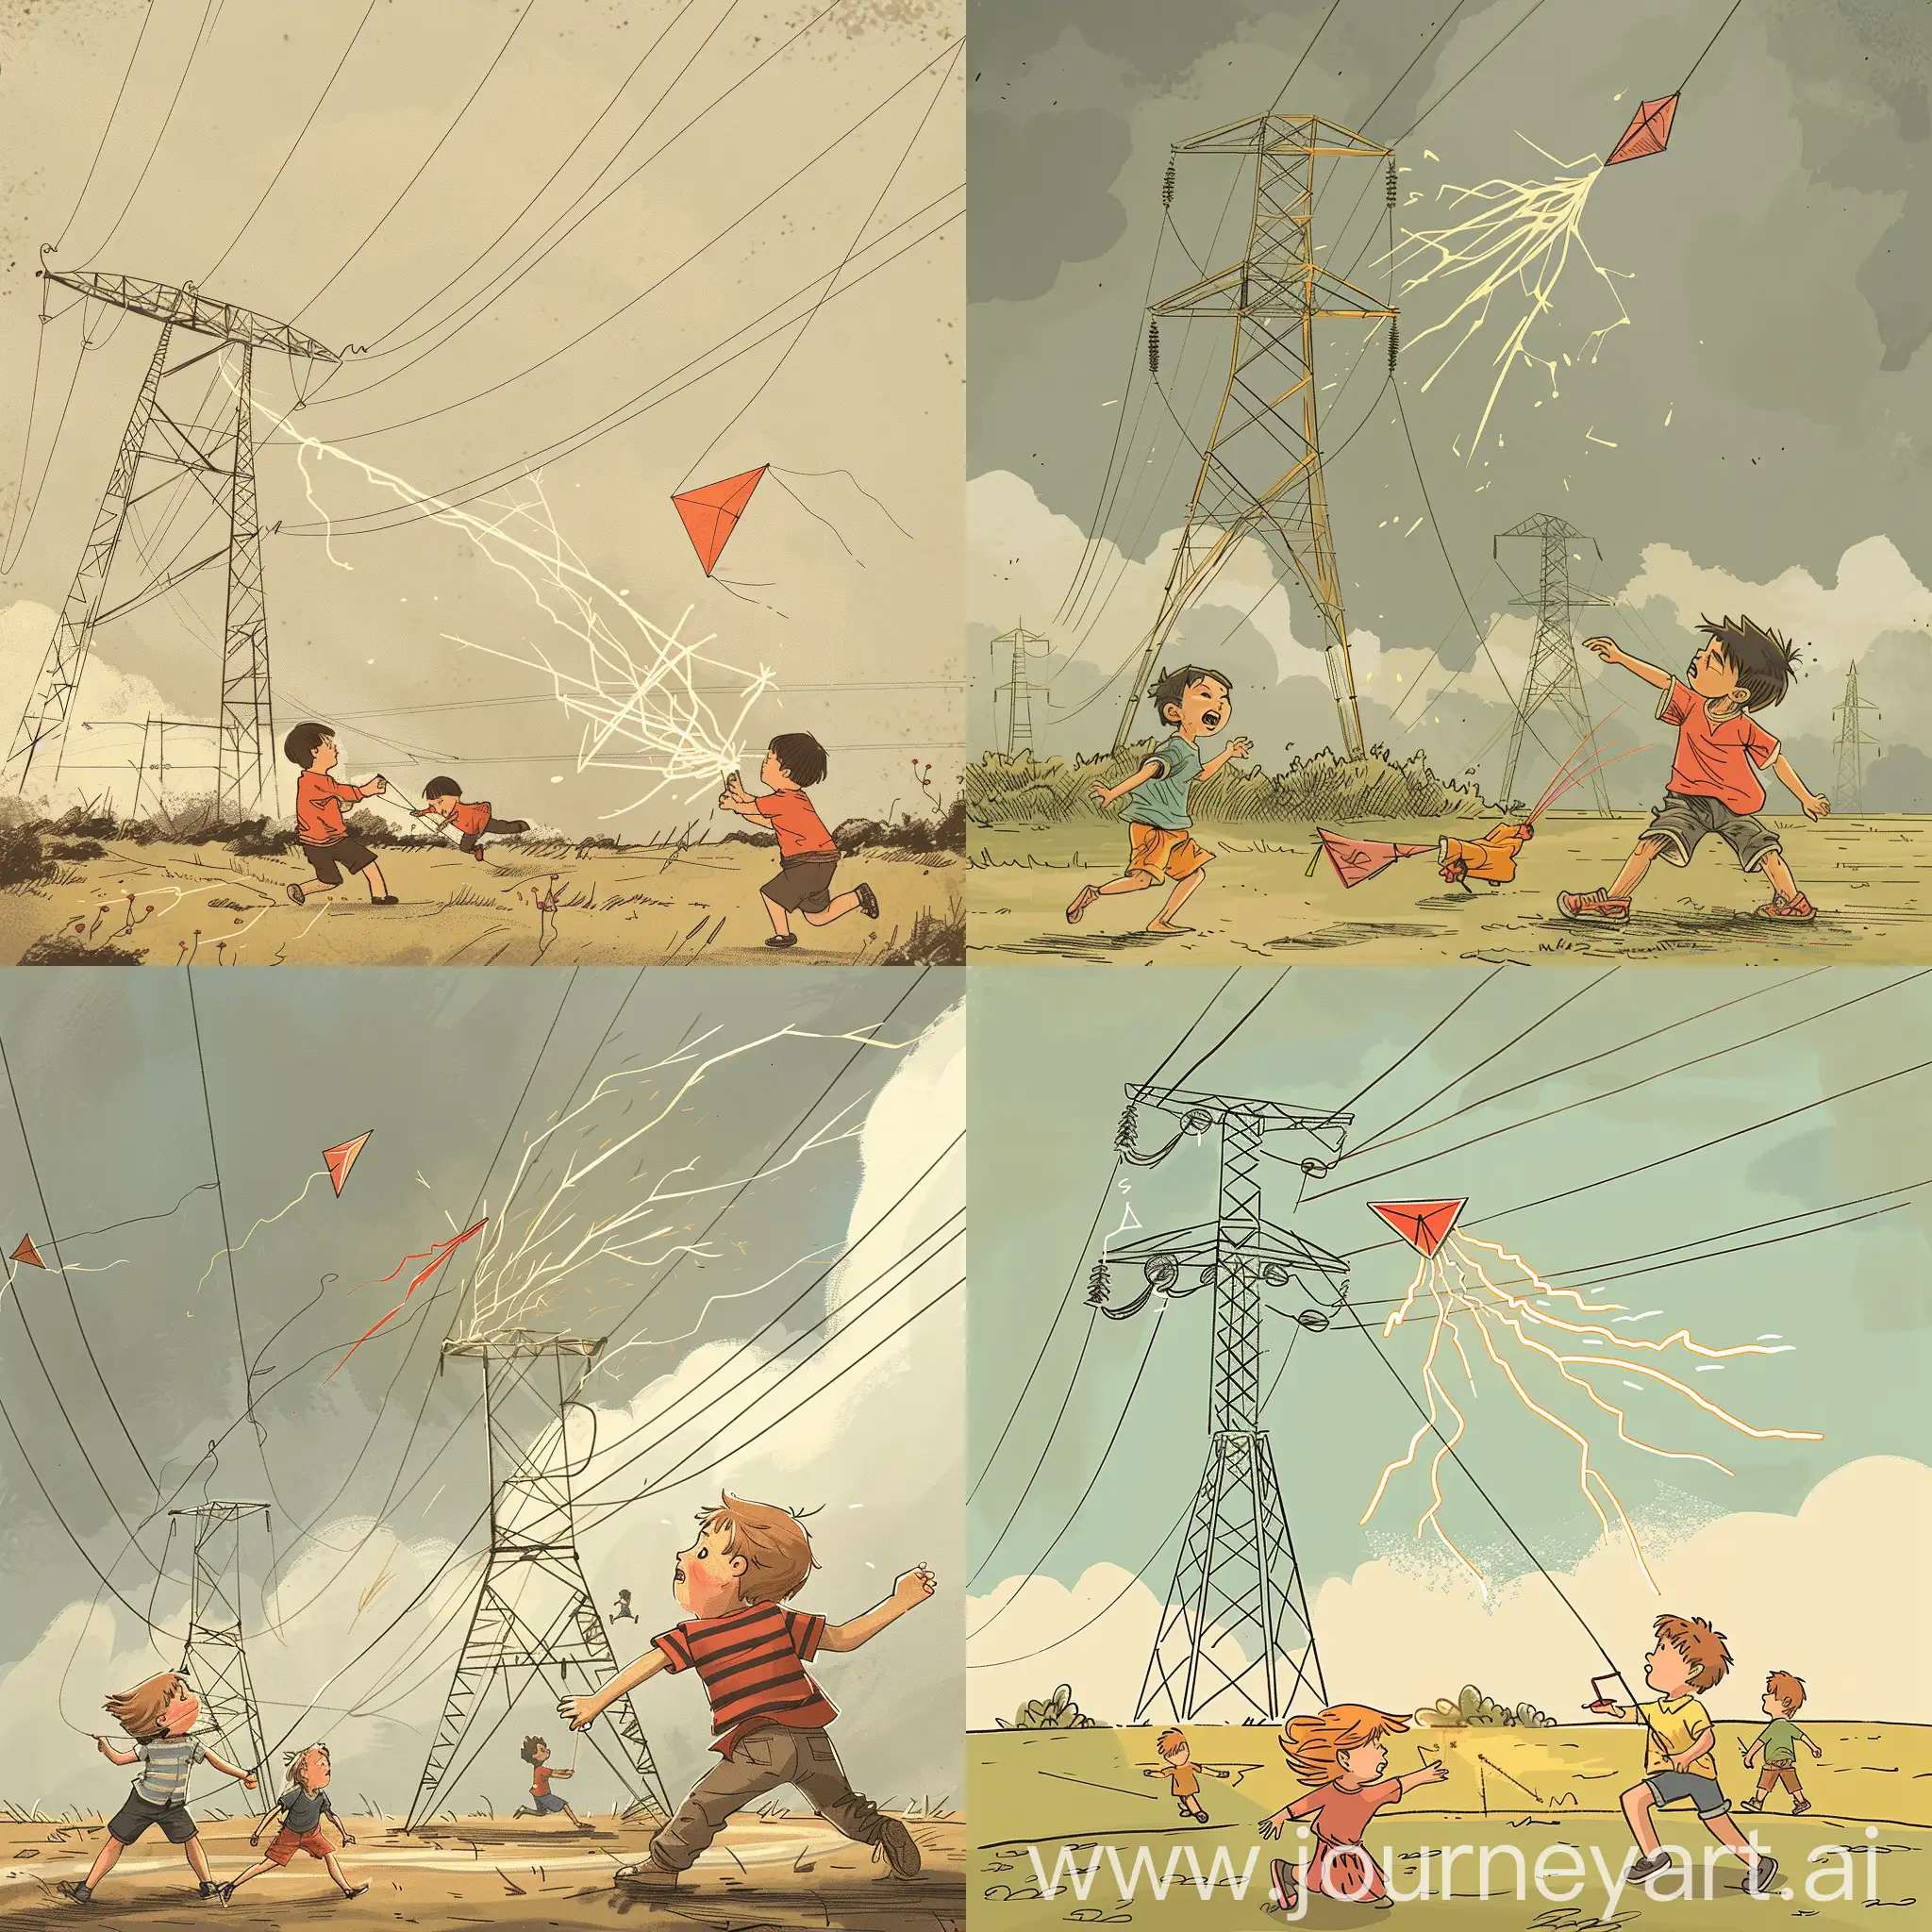 卡通风格,儿童在输电线路杆塔下放风筝,风筝触碰到输电线路杆塔的电线产生电火花,另一个儿童跑向触电儿童